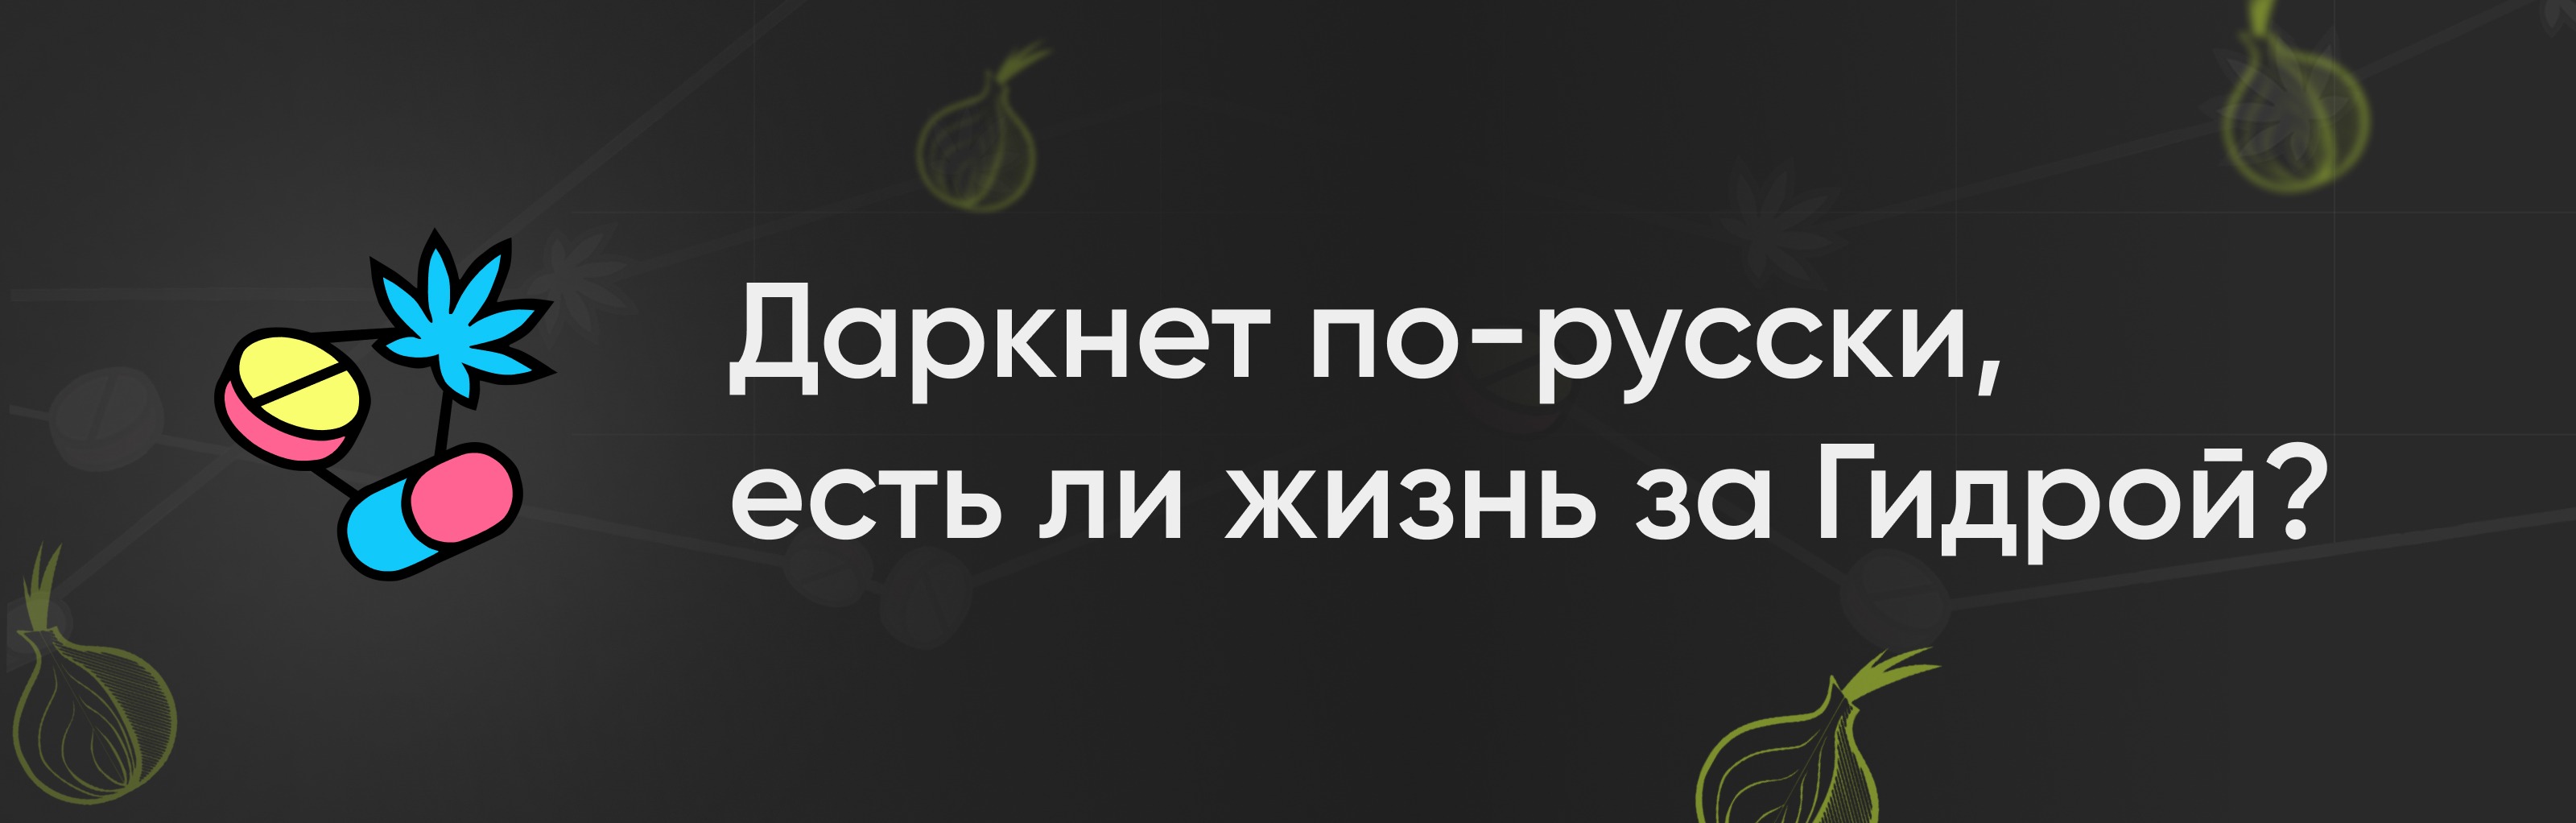 скачать blacksprut на русском бесплатно на mac даркнет